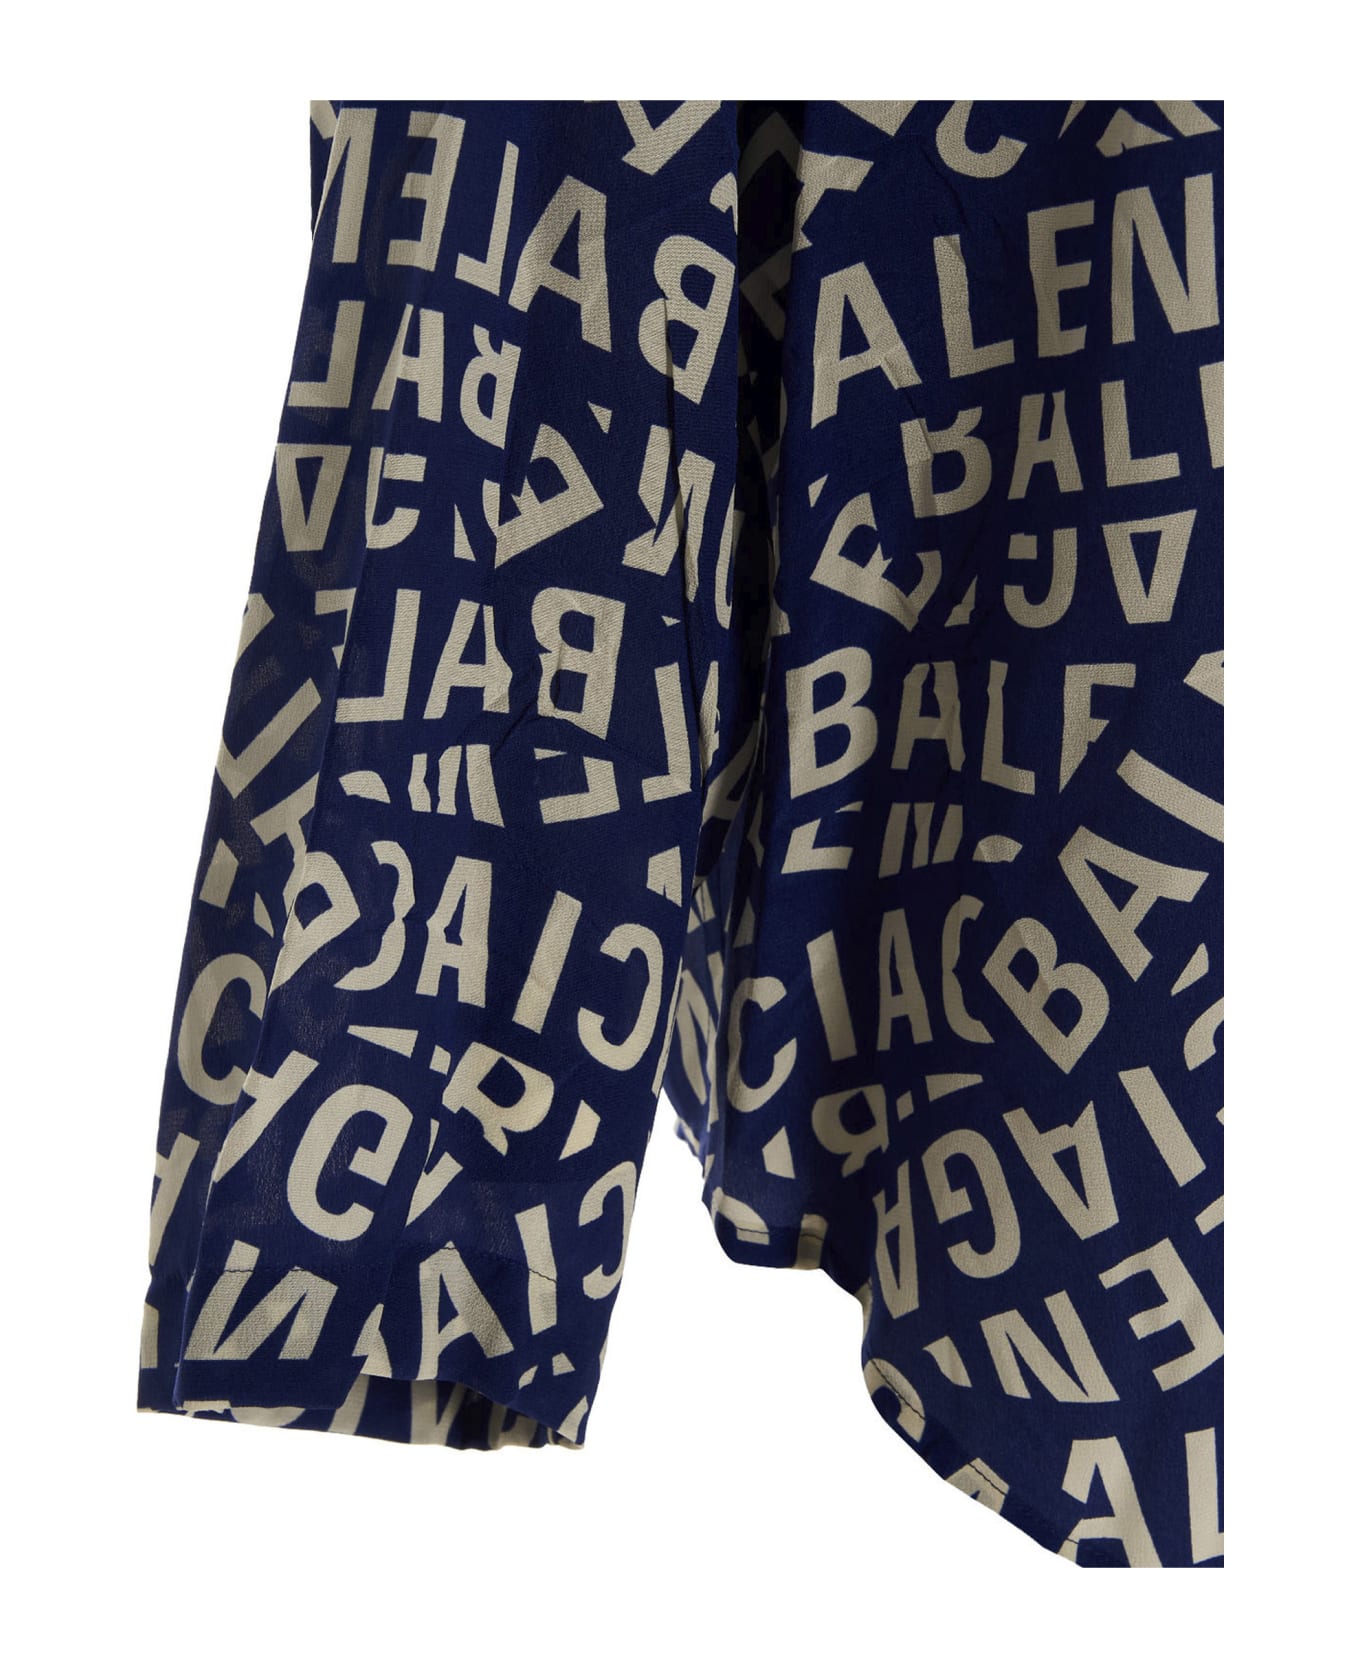 Balenciaga Printed Silk Pajama Blouse - blue シャツ